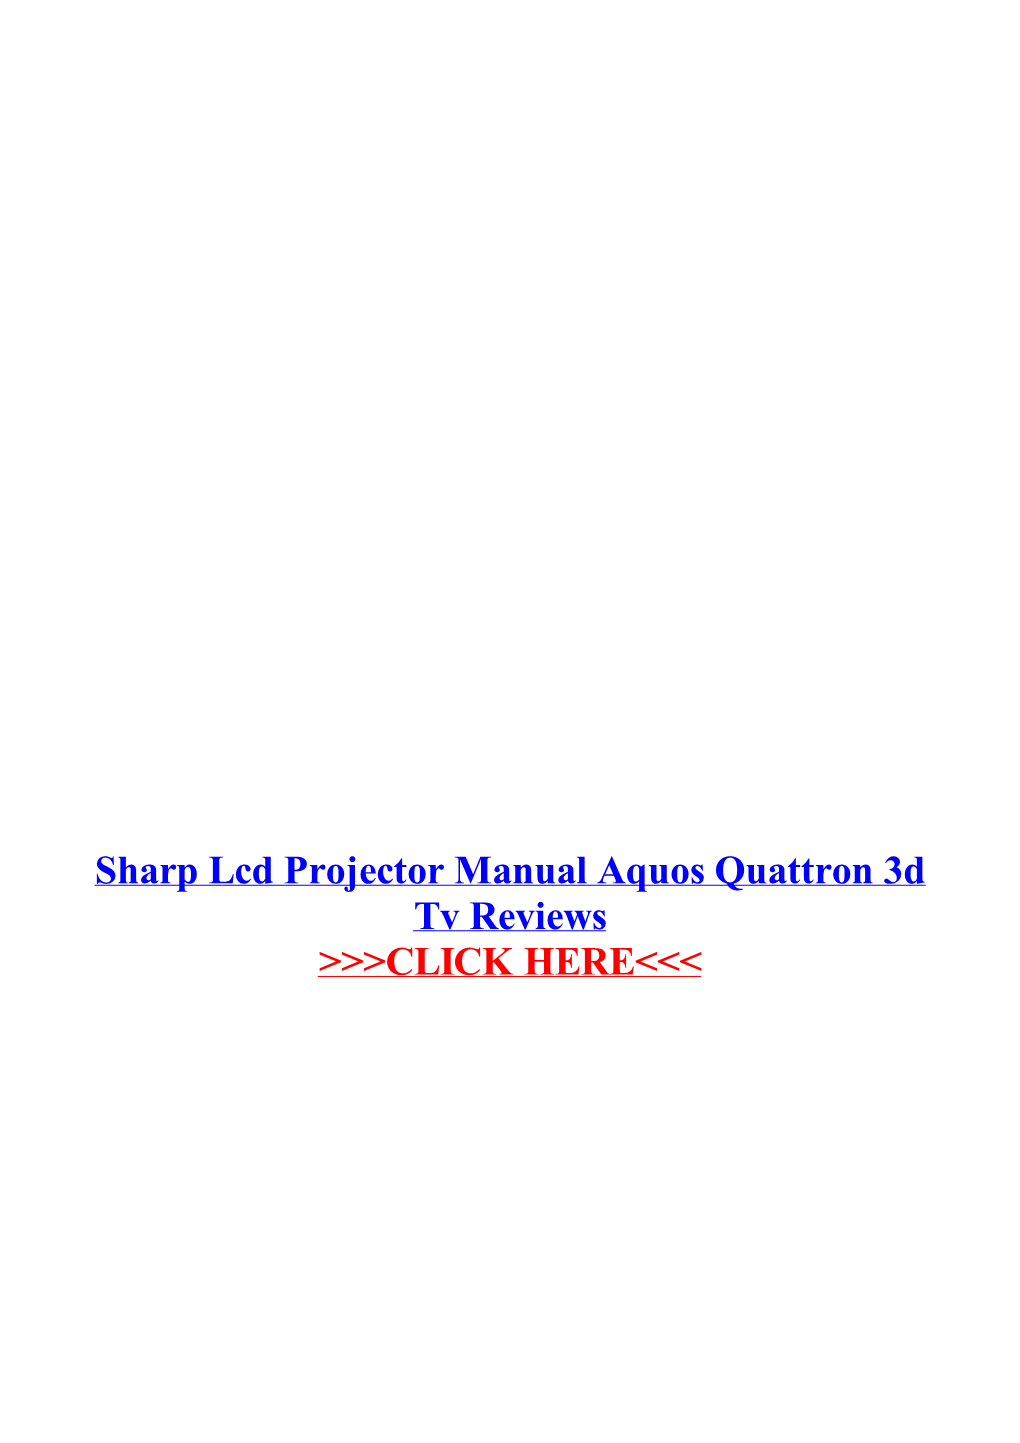 Sharp Lcd Projector Manual Aquos Quattron 3D Tv Reviews